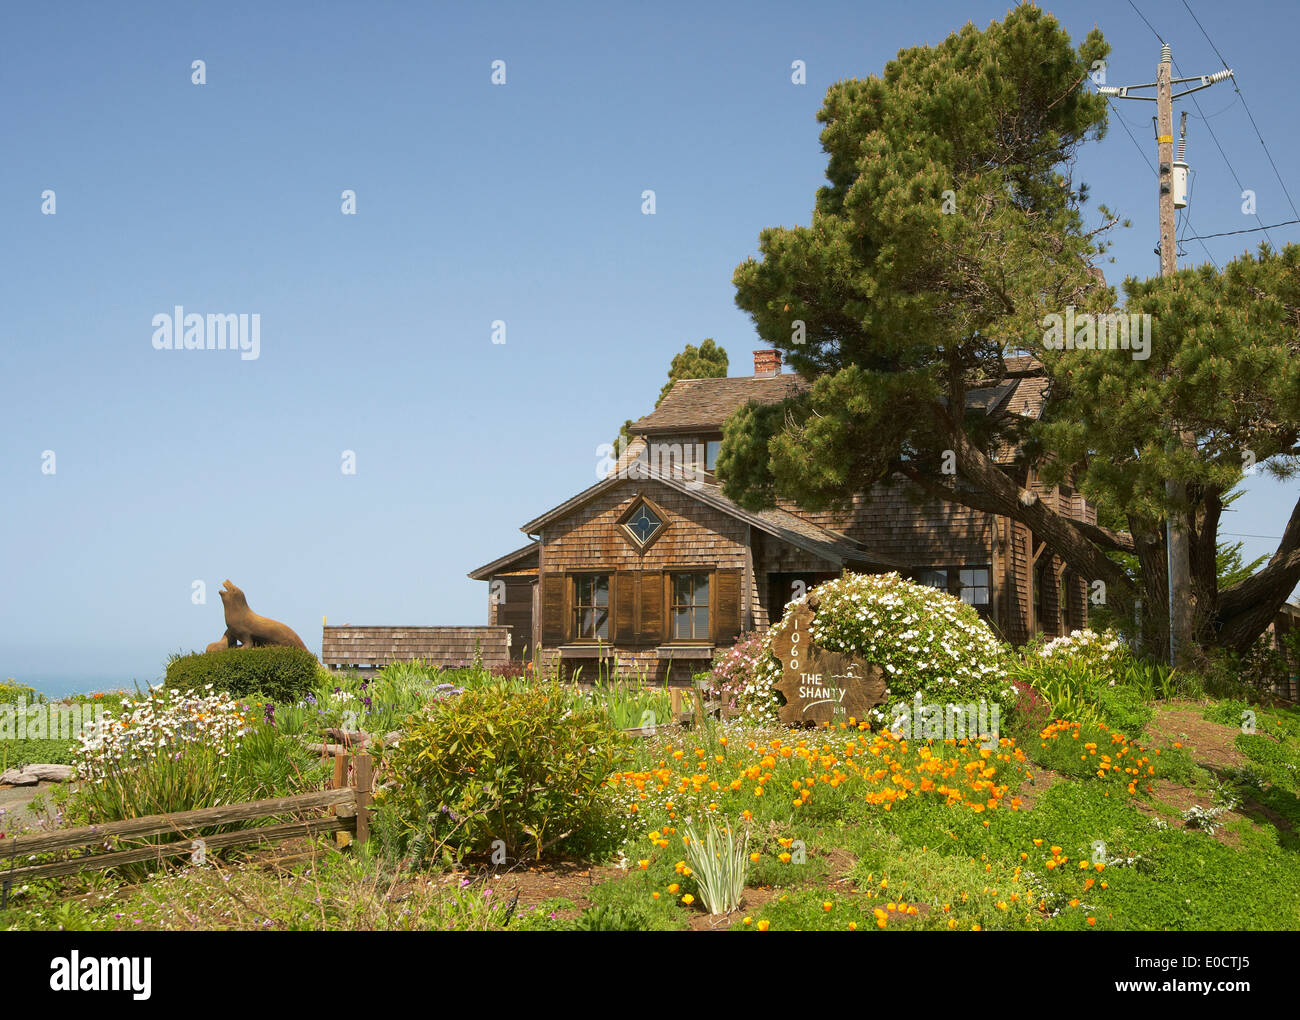 Wooden house with garden at Navarro, Mendocino, California, USA, America Stock Photo